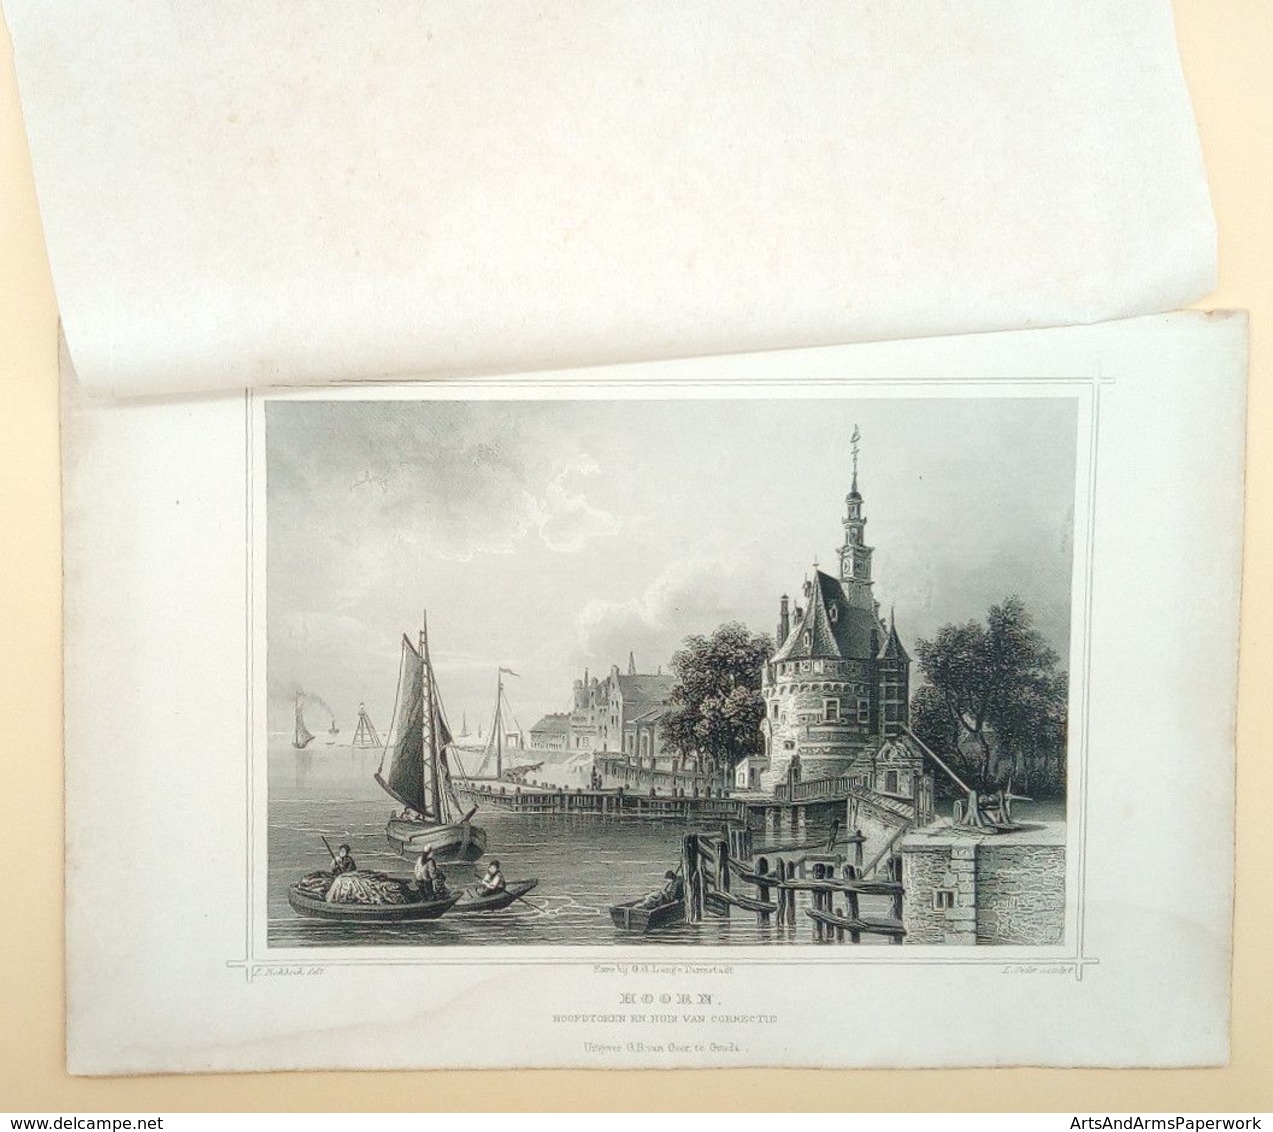 Hoorn, Hoofdtoren En Huis Van Correctie 1858/ Hoorn (NL) Main Tower And Disciplinary House 1858. Rohbock, Oeder - Art